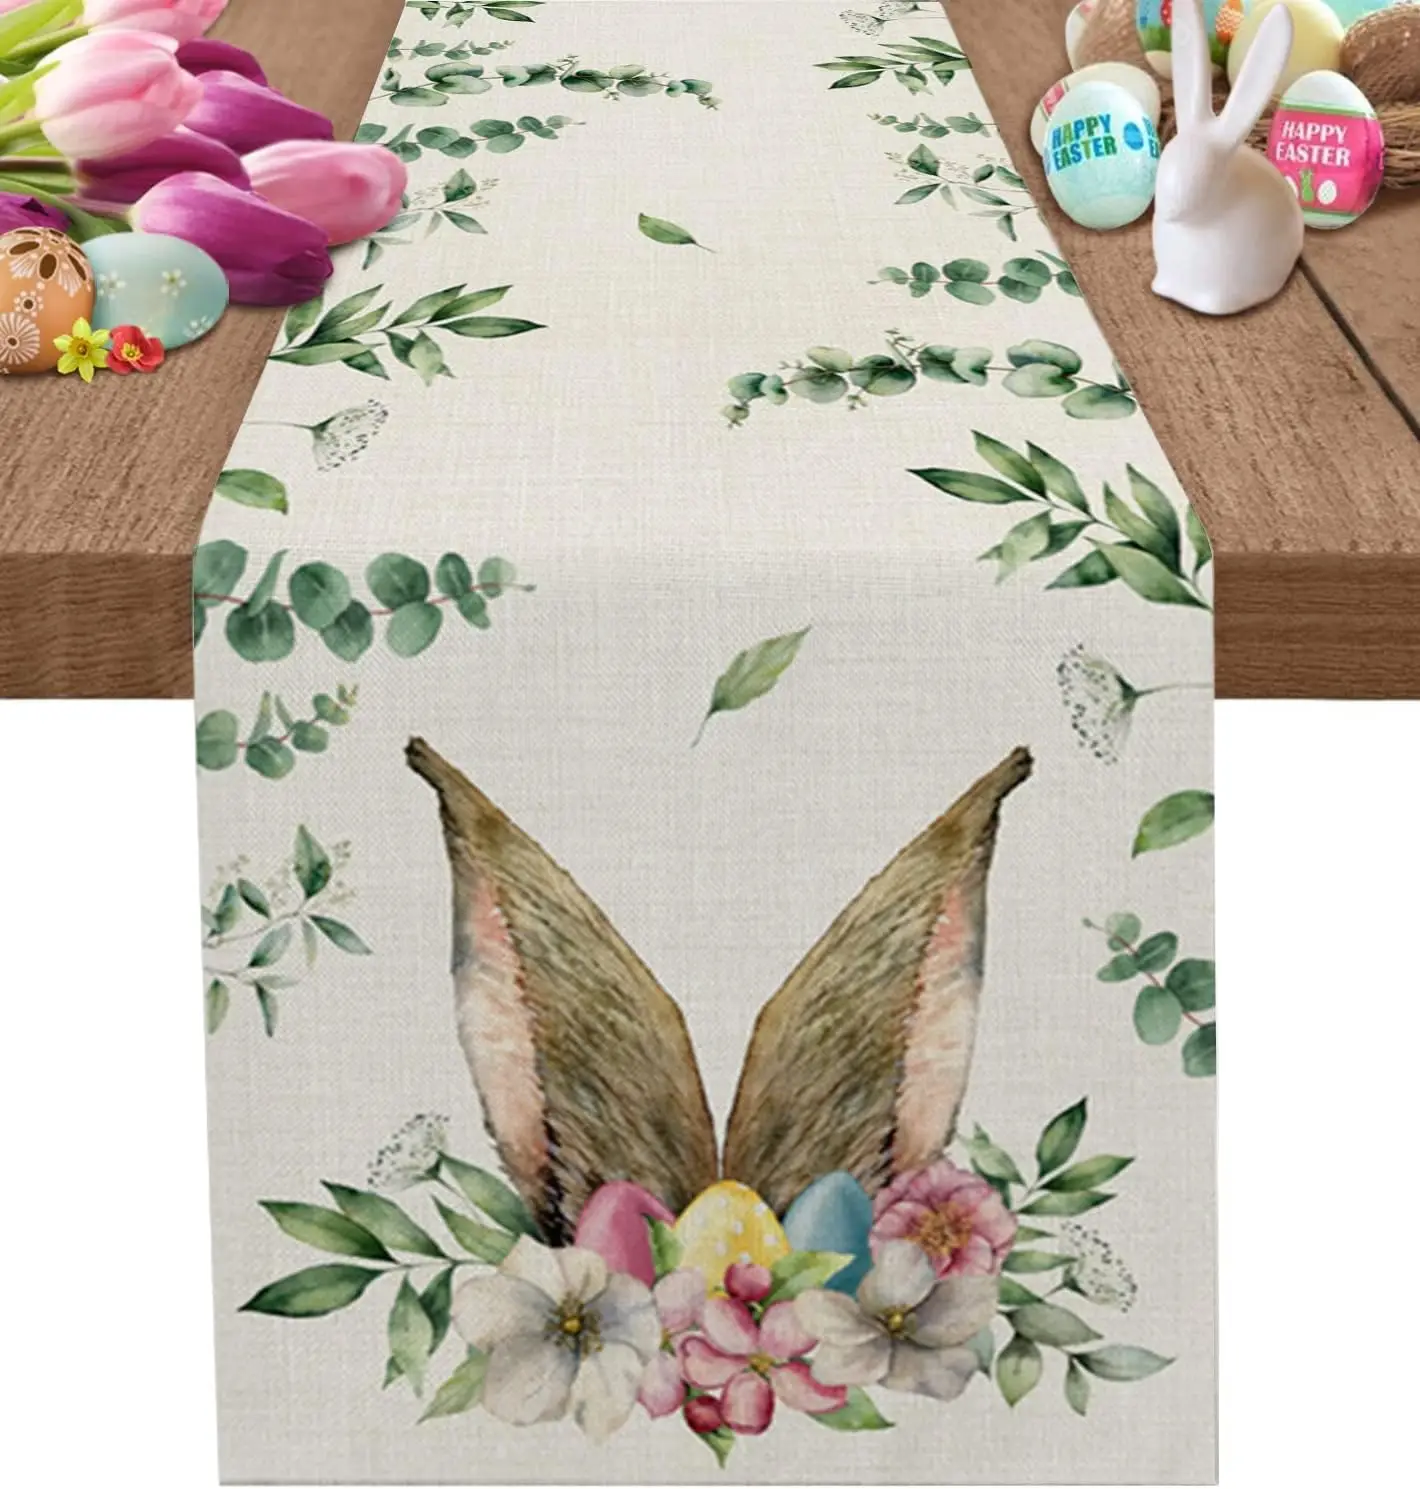 

Пасхальный кролик яйцо цветок тюльпан льняные скатерти комод шарфы декор для стола фермерский обеденный стол бегунки пасхальные украшения